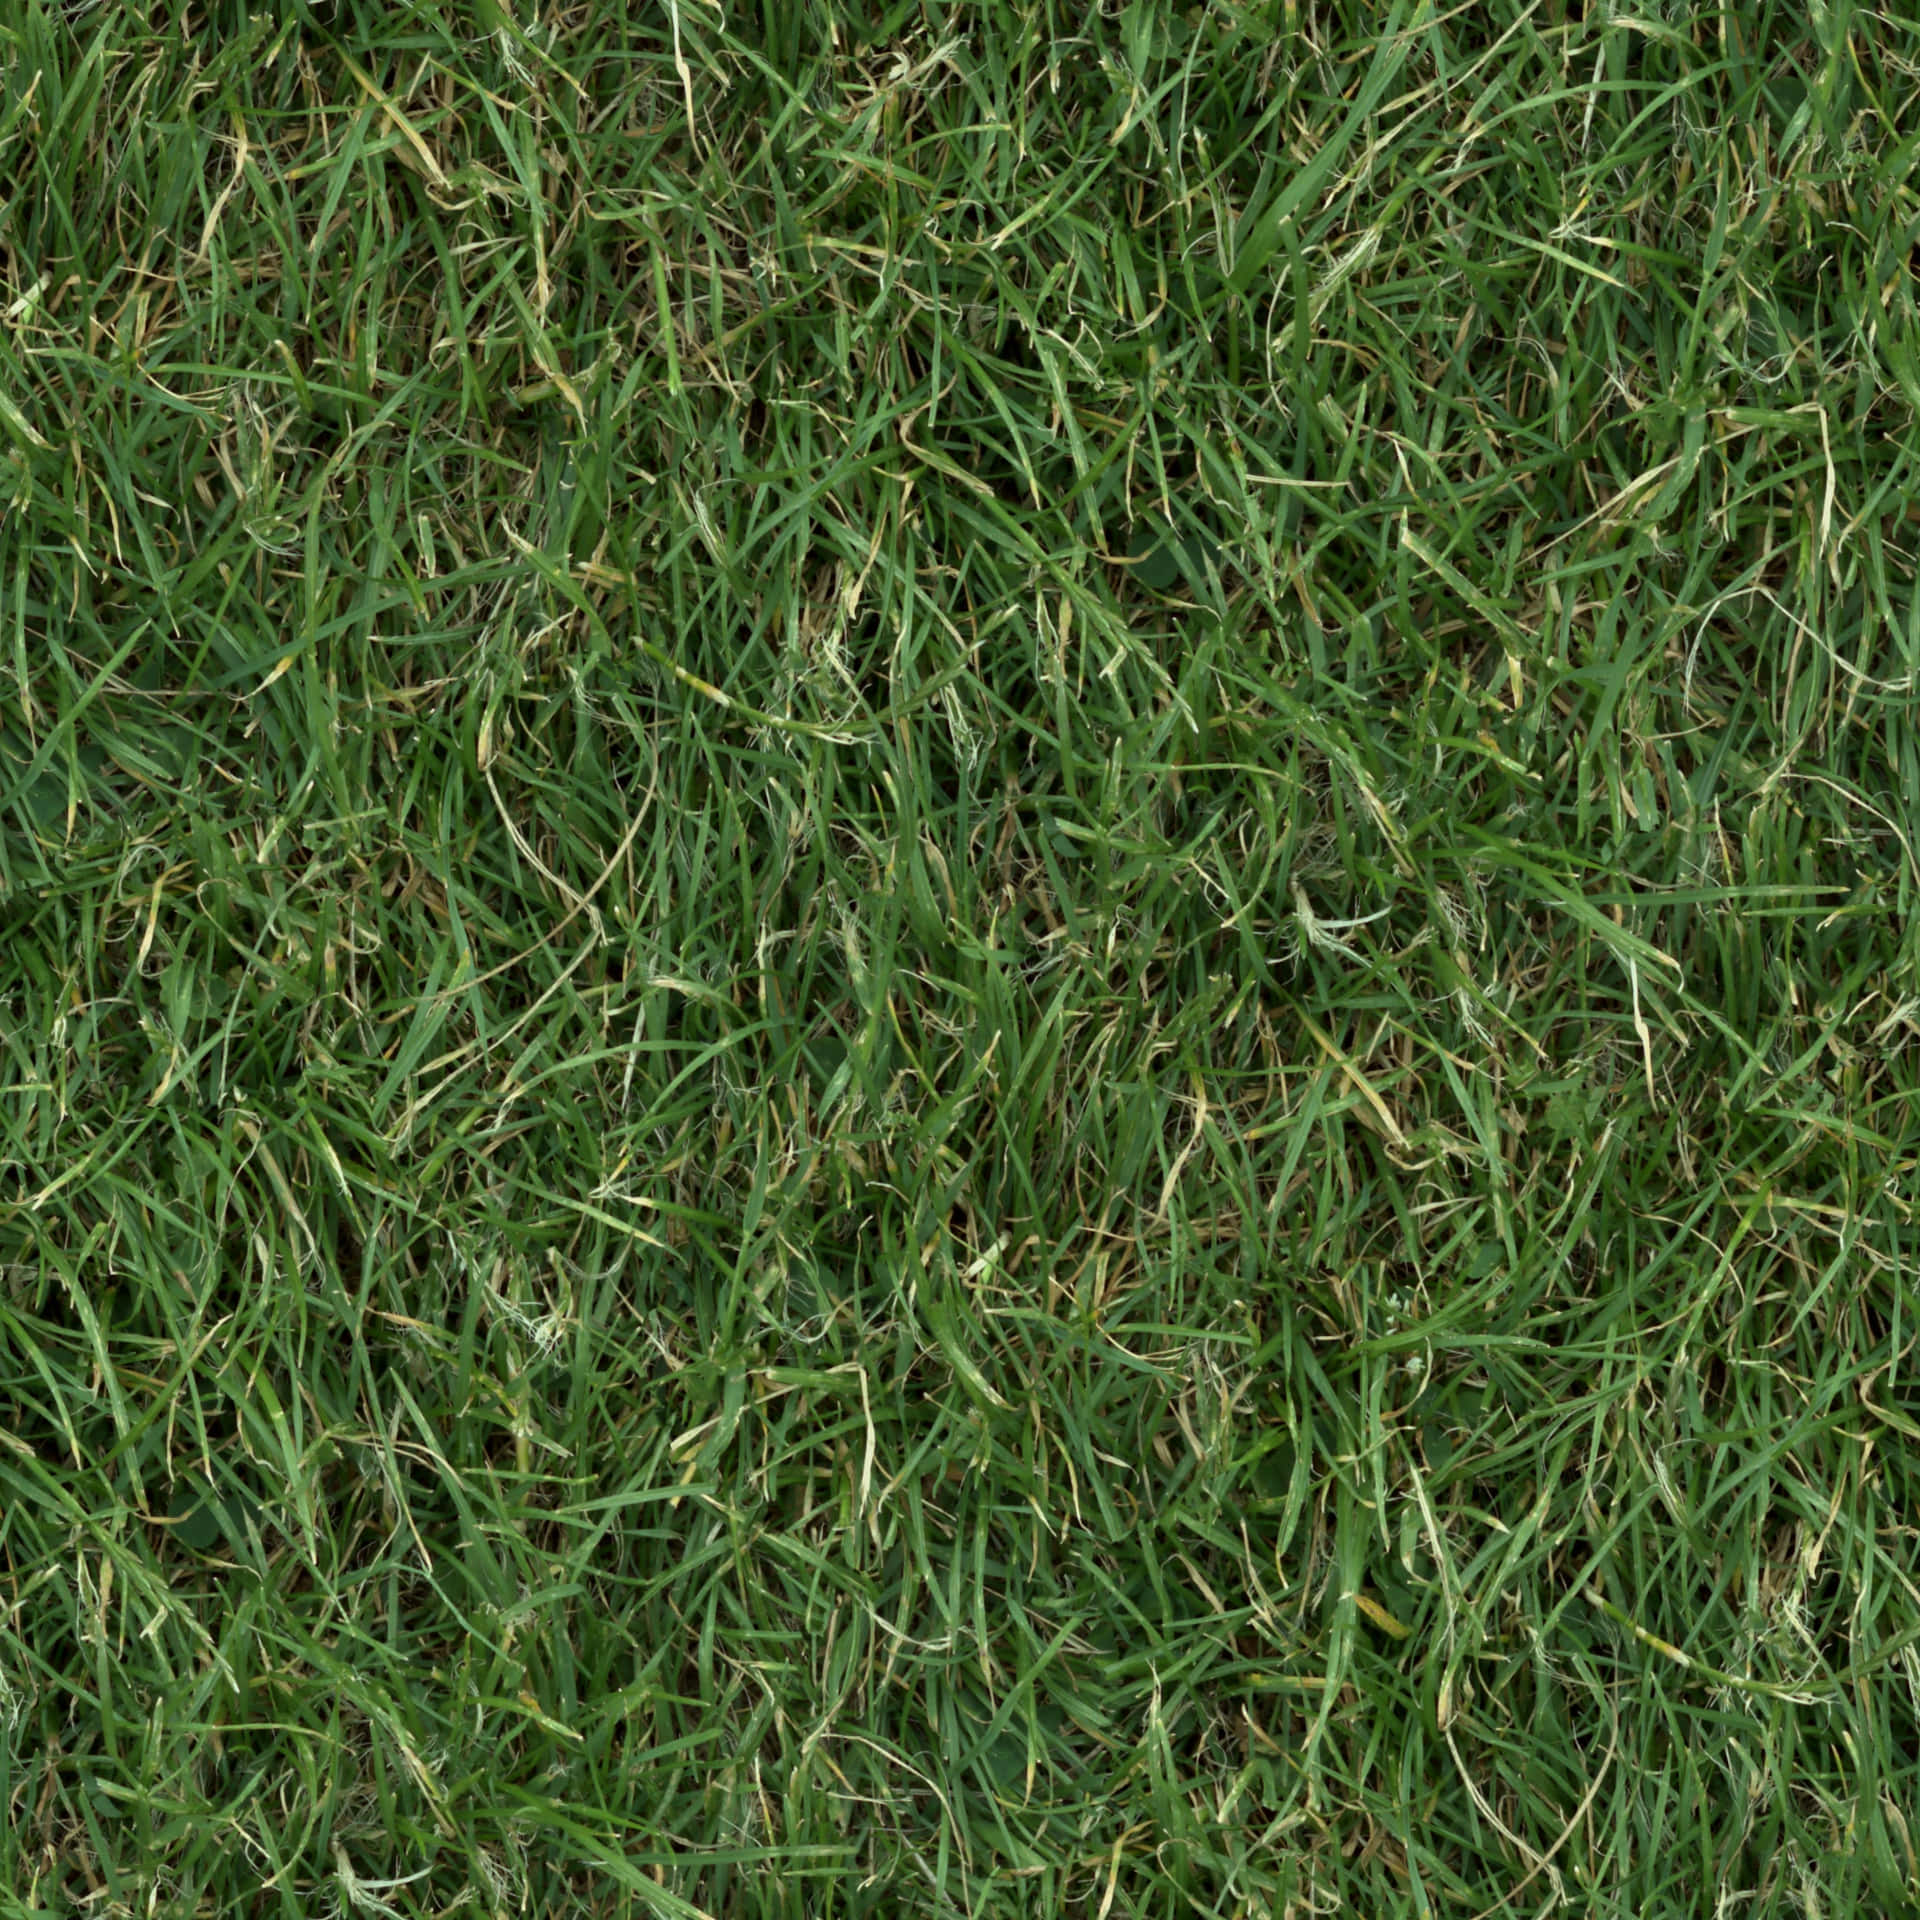 Close-up of fresh green grass texture